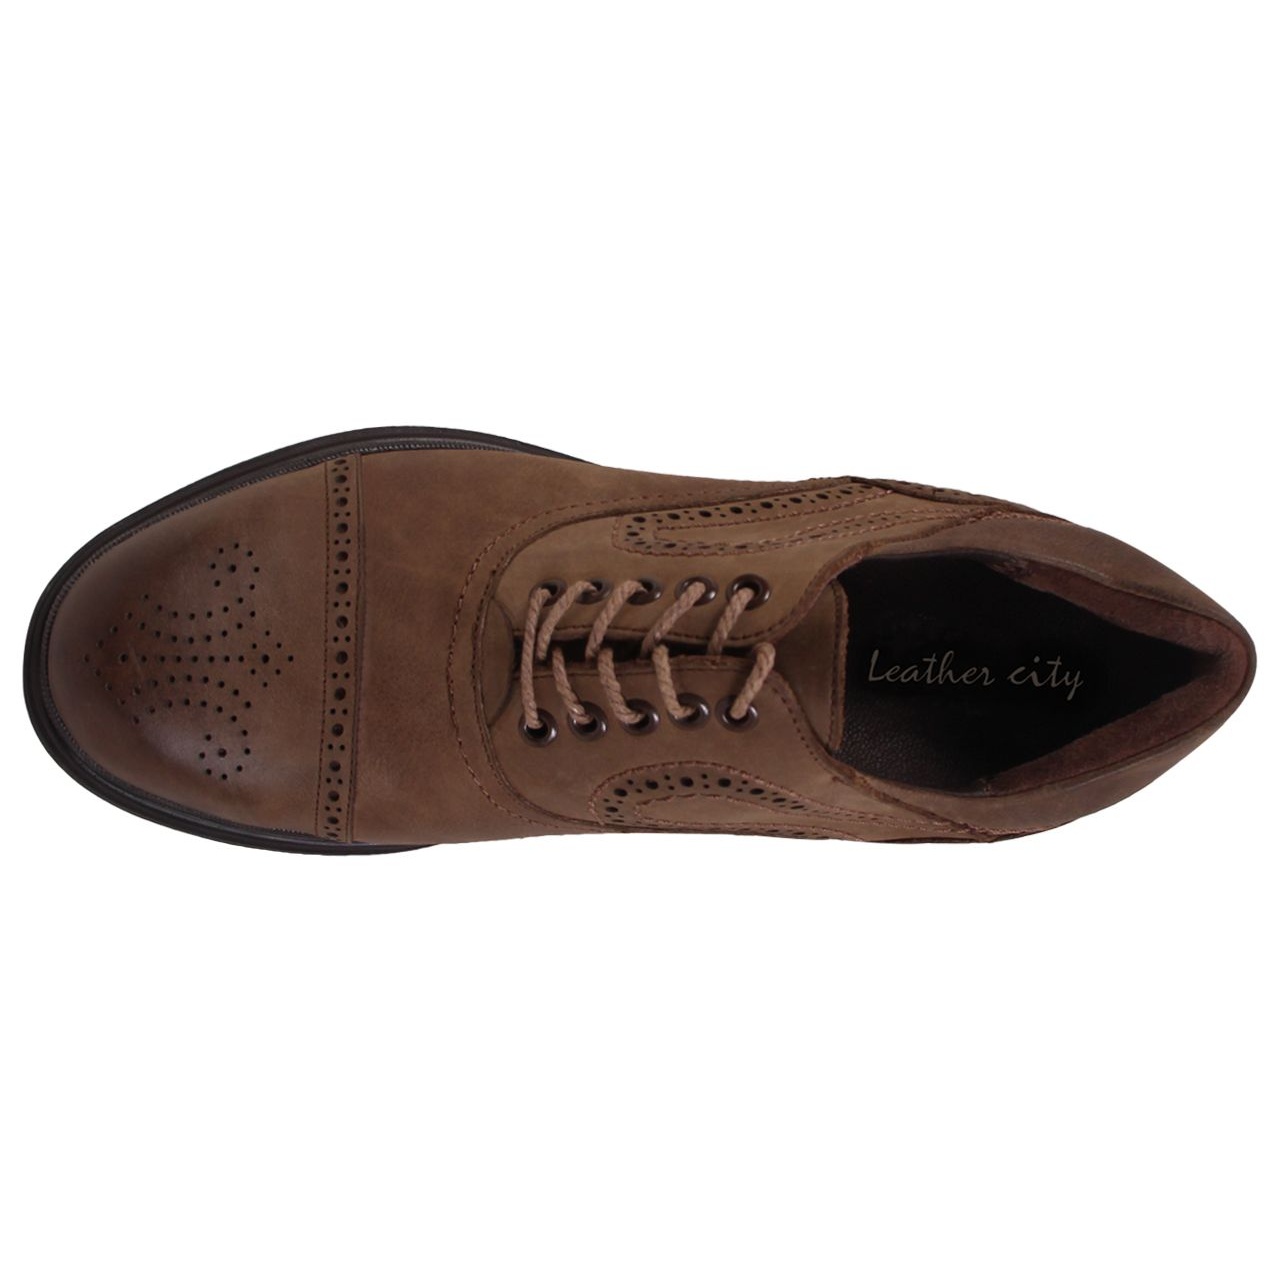 SHAHRECHARM leather men's casual shoes , M8901-14  Model